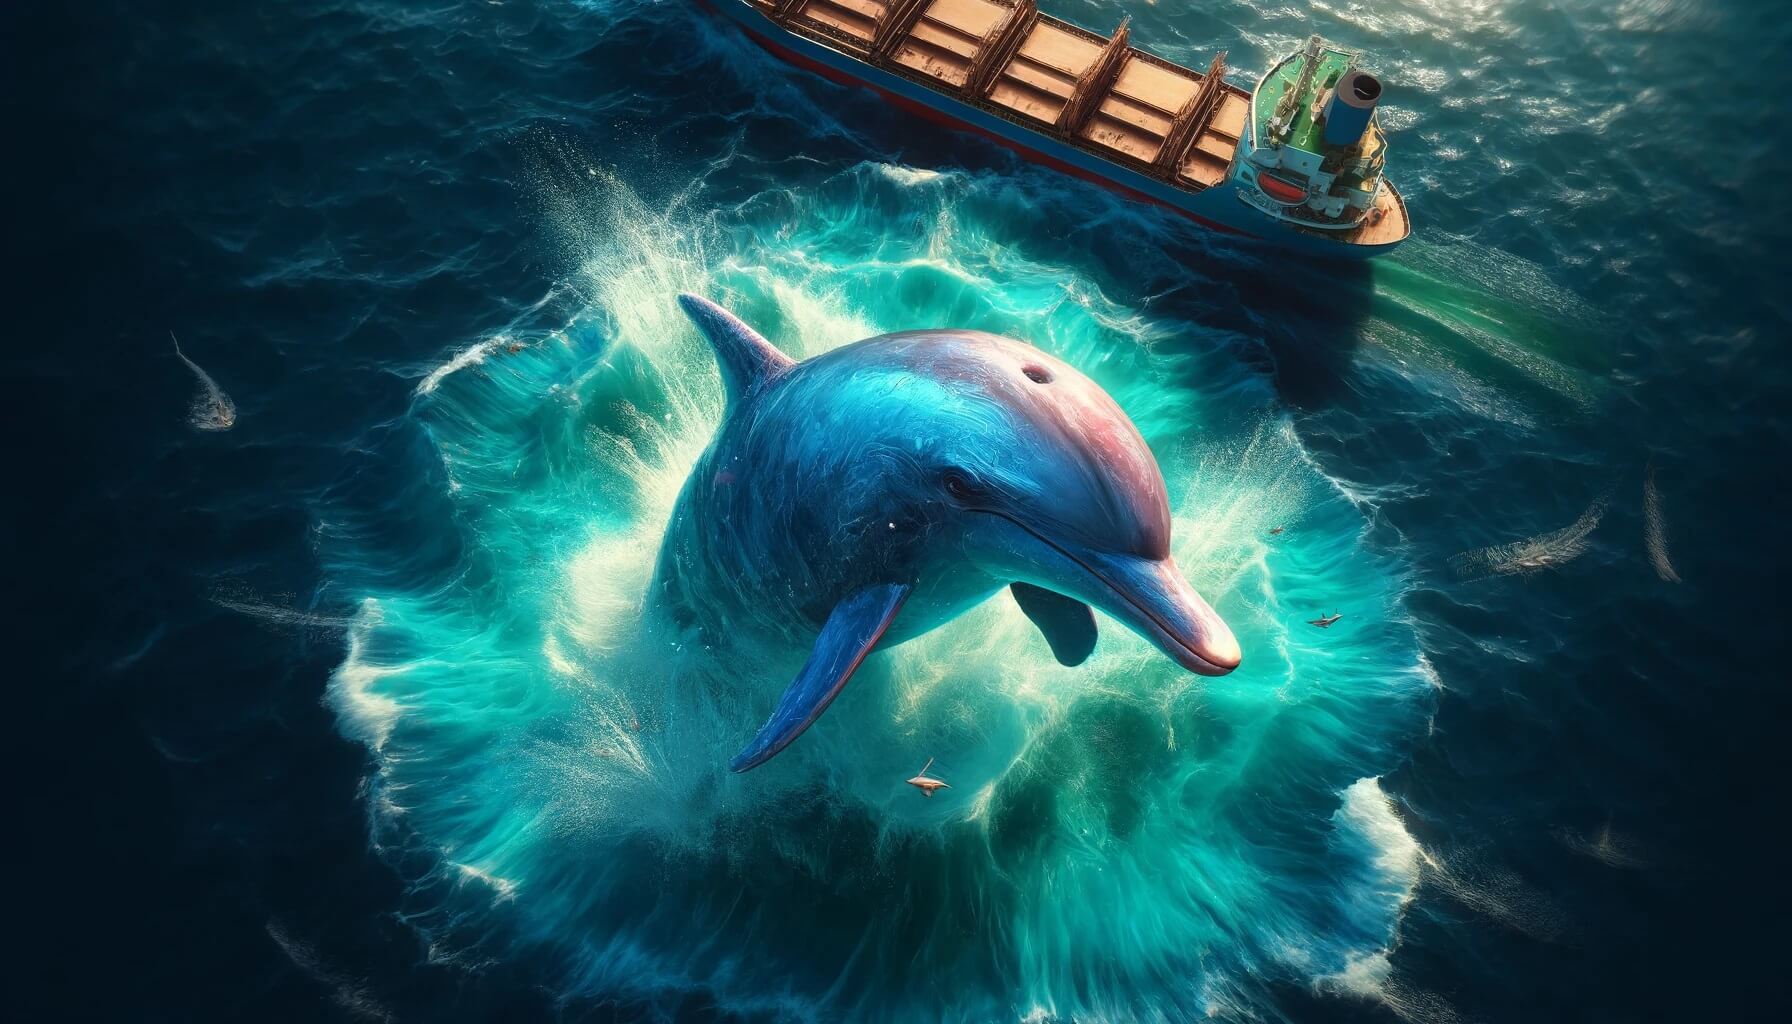 Почему дельфины сопровождают корабли во время плавания. Дельфины часто сопровождают корабли во время плавания, и ученые не могут понять, для чего именно они то делают. Фото.